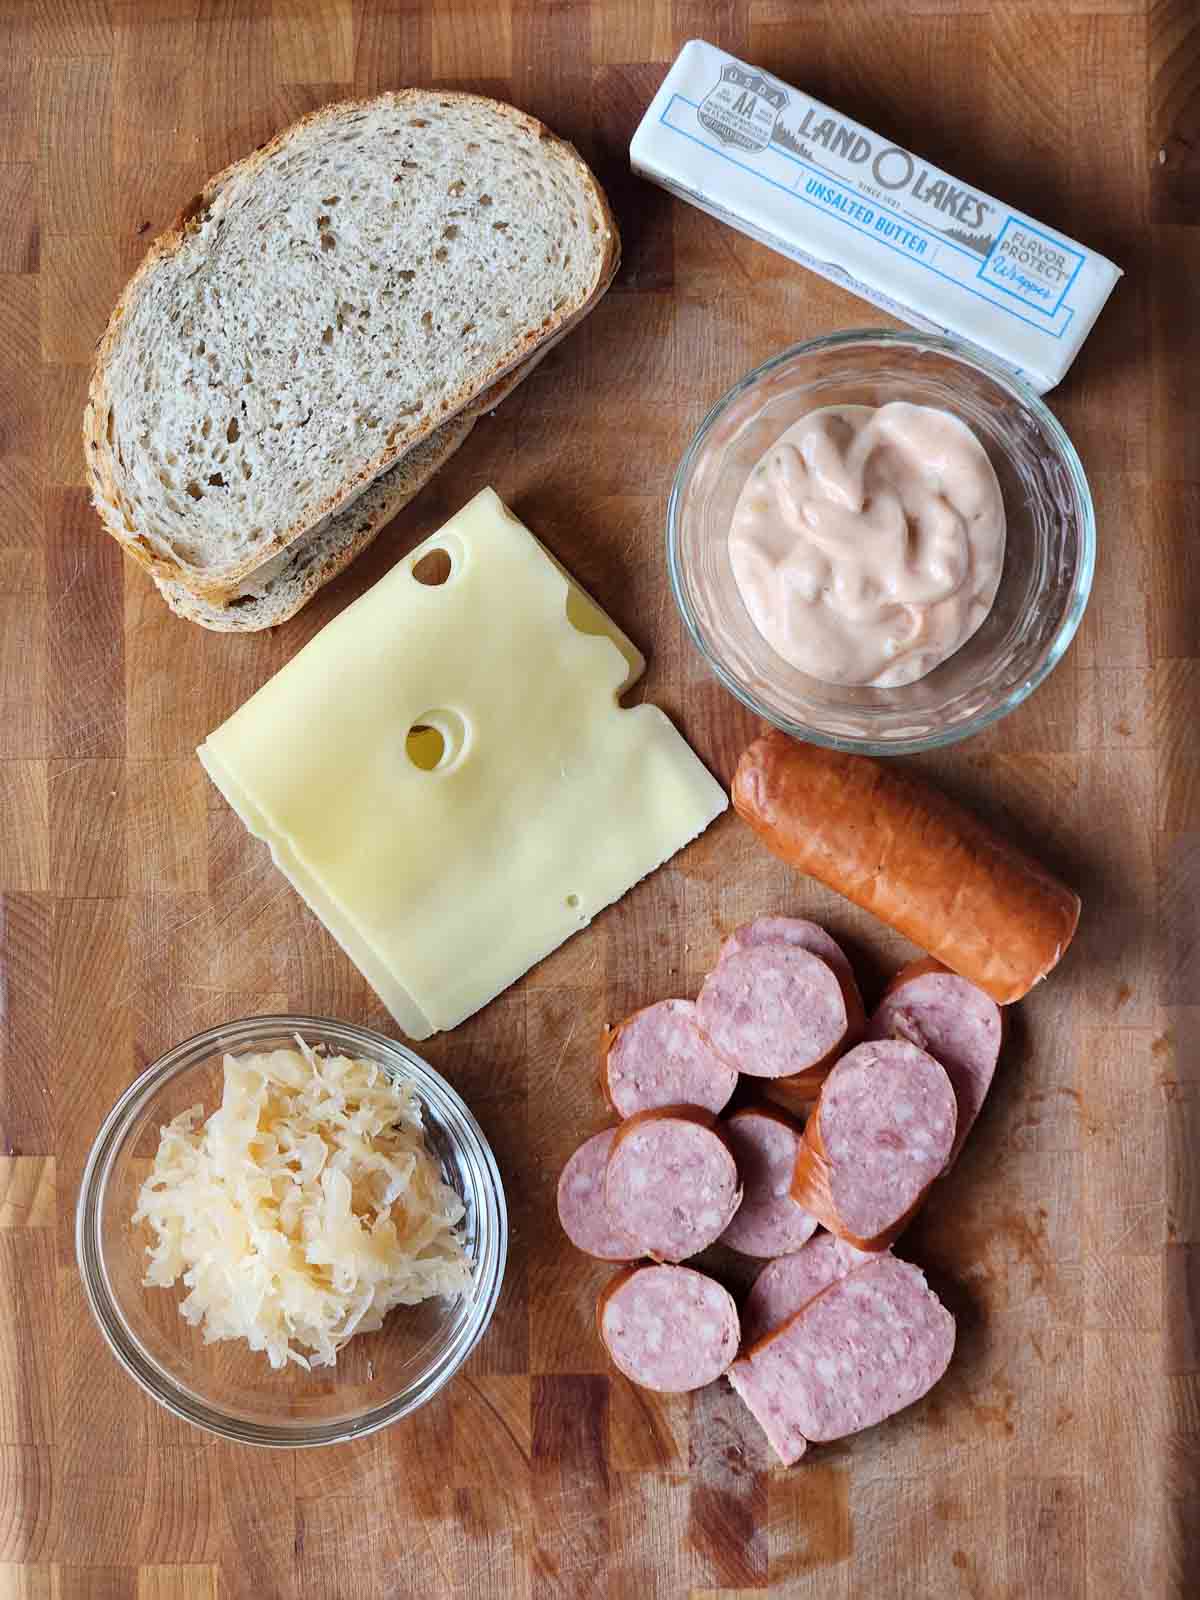 Ingredients for a kielbasa Reuben sandwich on a cutting board.